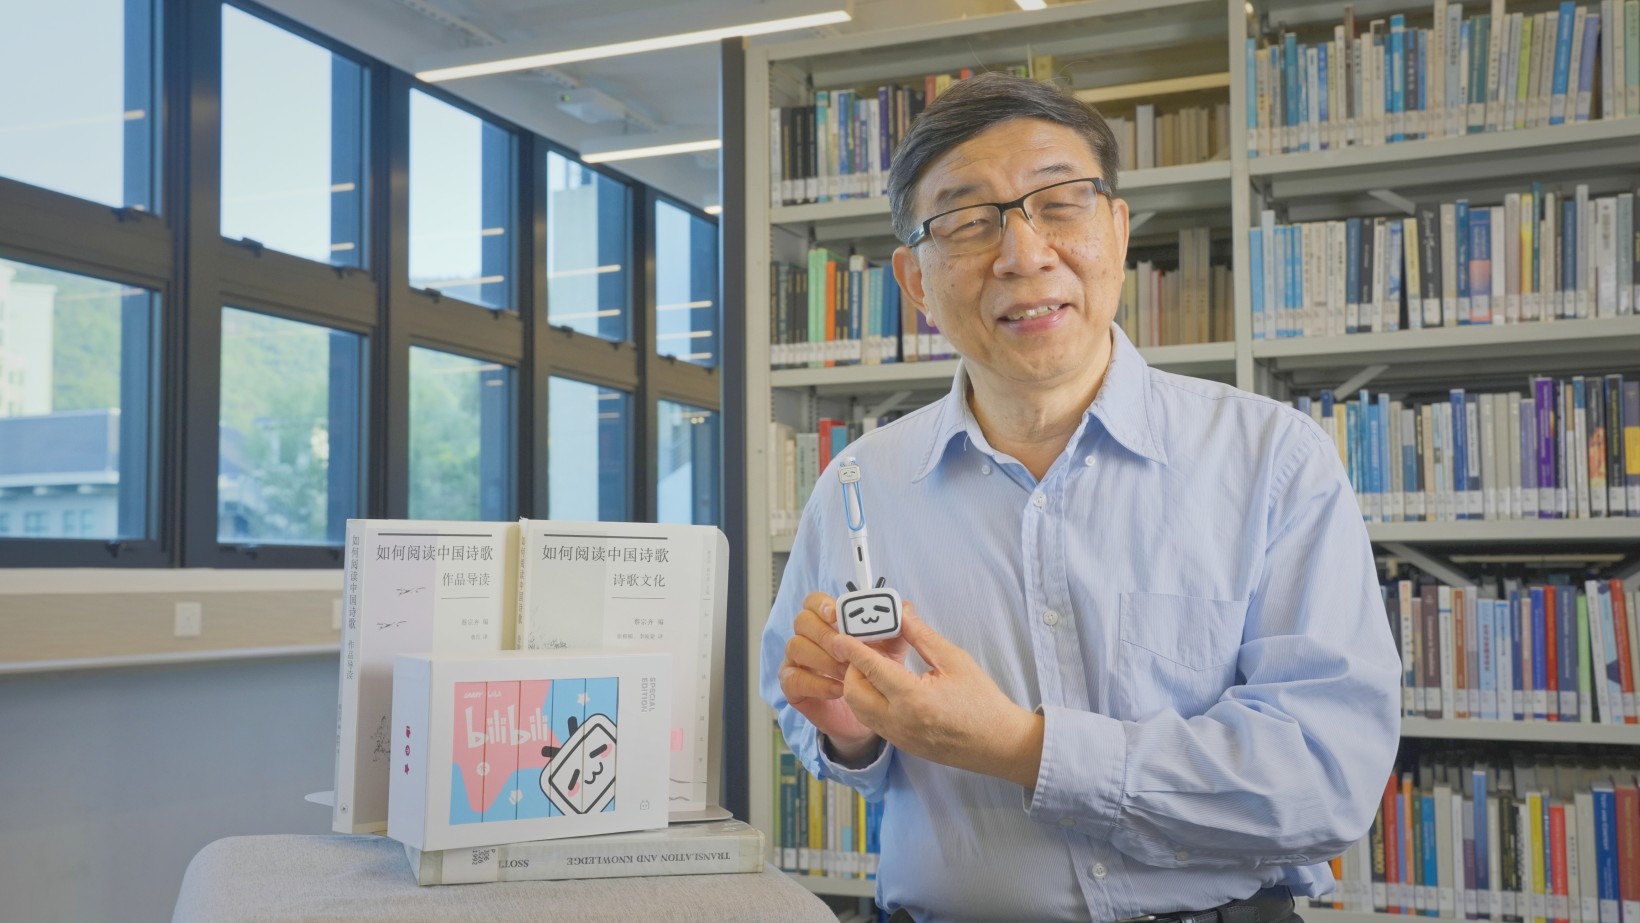 嶺大中國文化高等研究院院長蔡宗齊教授策劃主持《如何閱讀中國詩歌》。